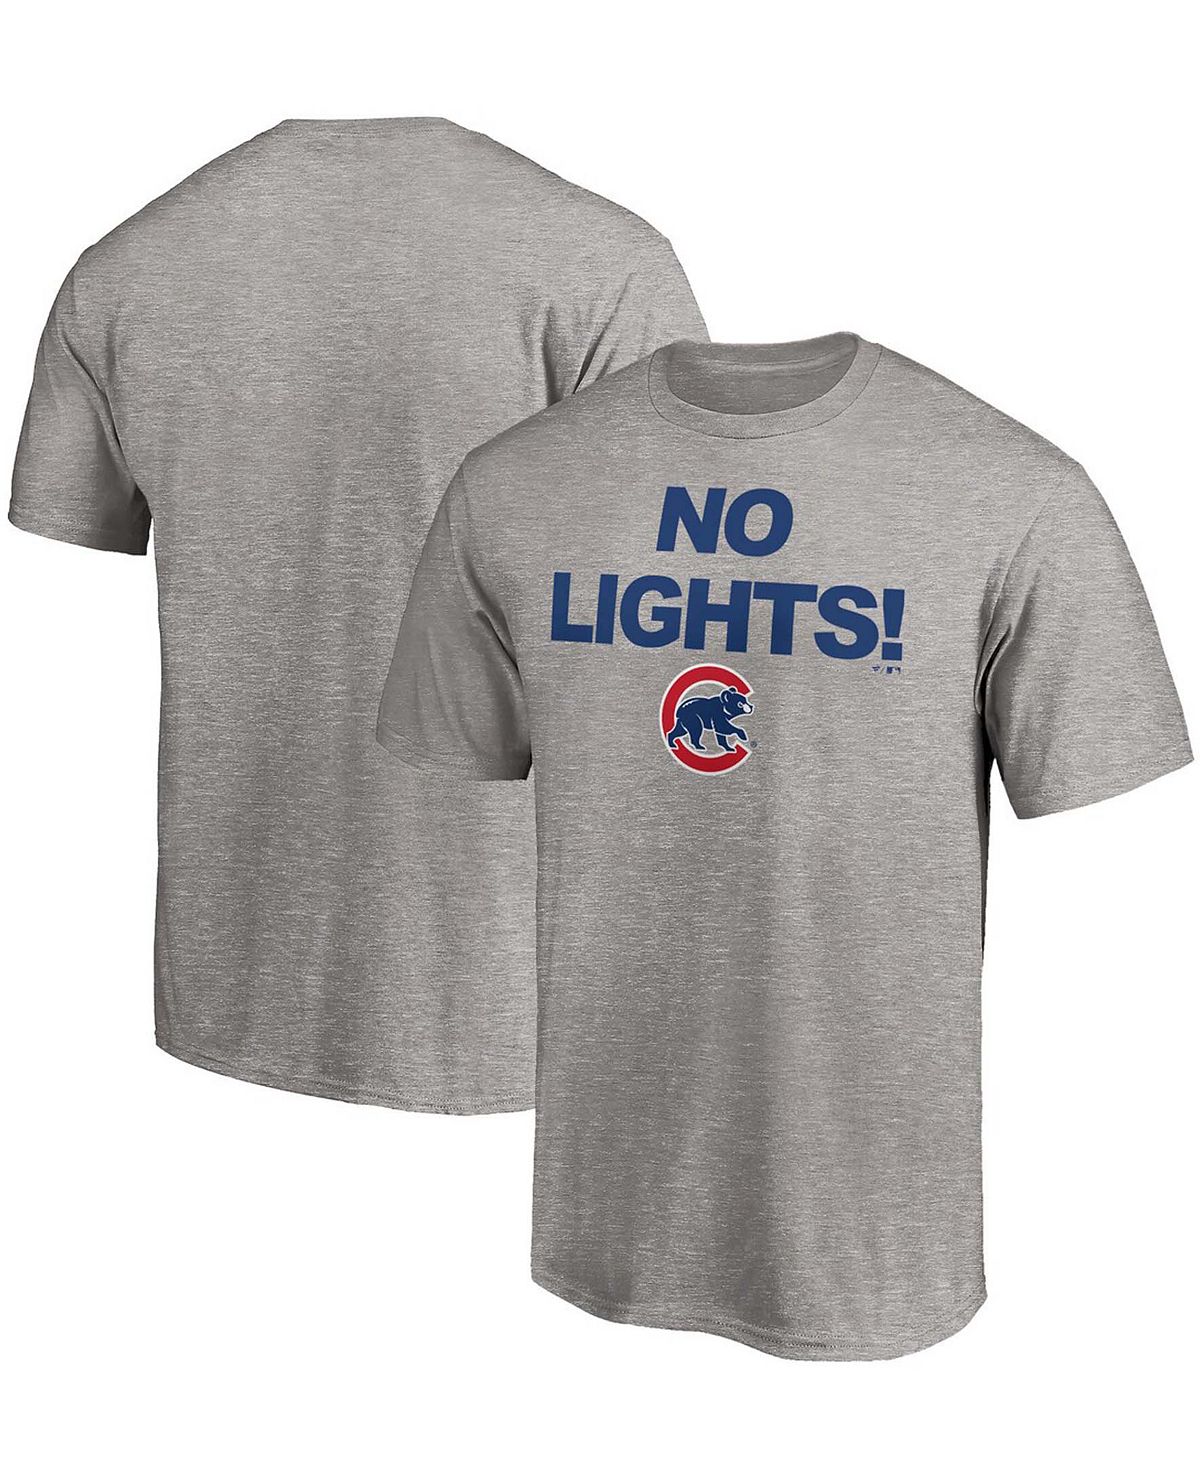 цена Мужская футболка chicago cubs hometown с меланжевым покрытием серого цвета Fanatics, мульти